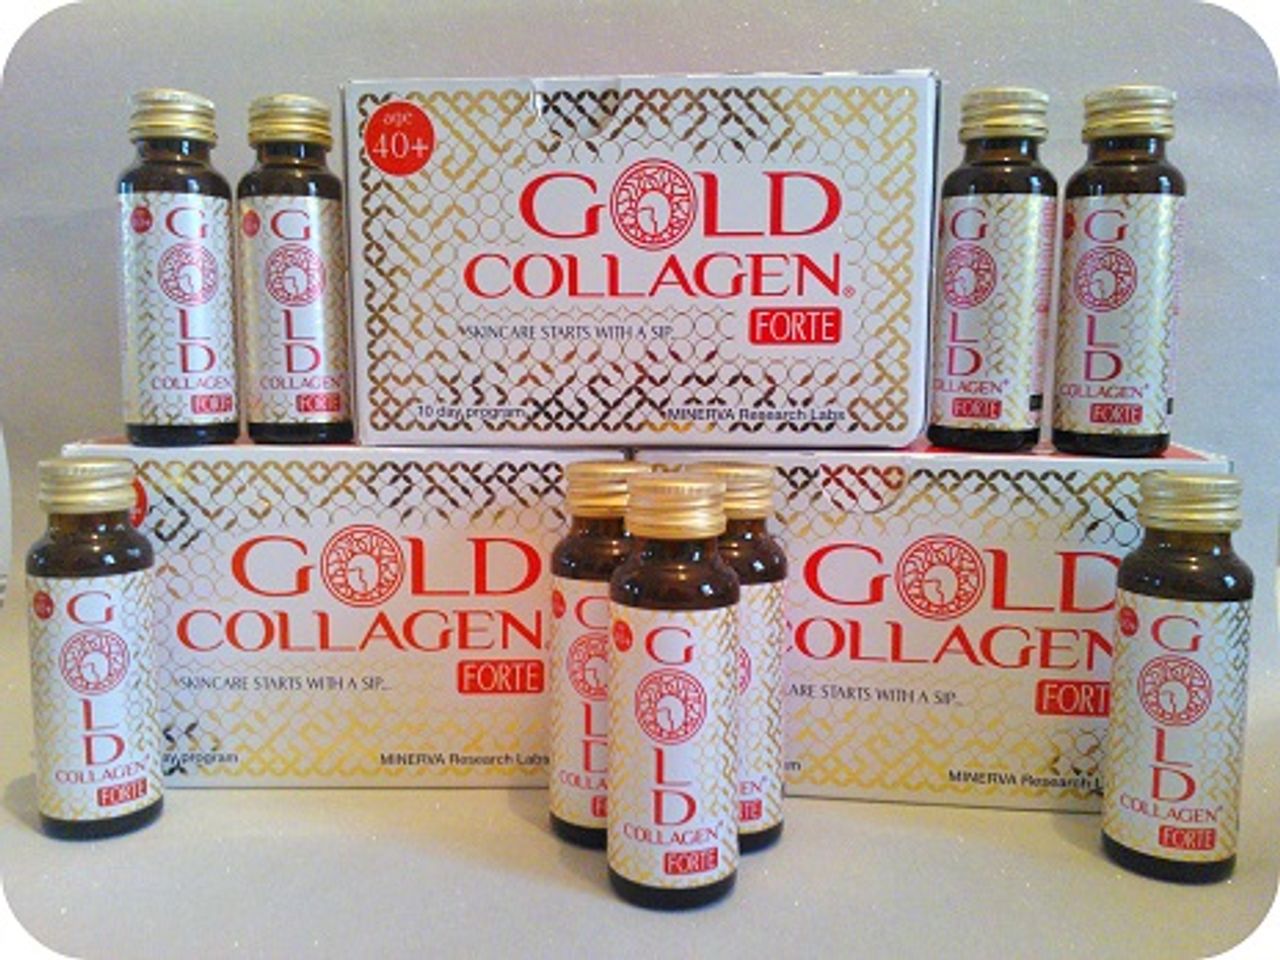 Gold Collagen Forte cải thiện da trở nên mềm mại và săn chắc